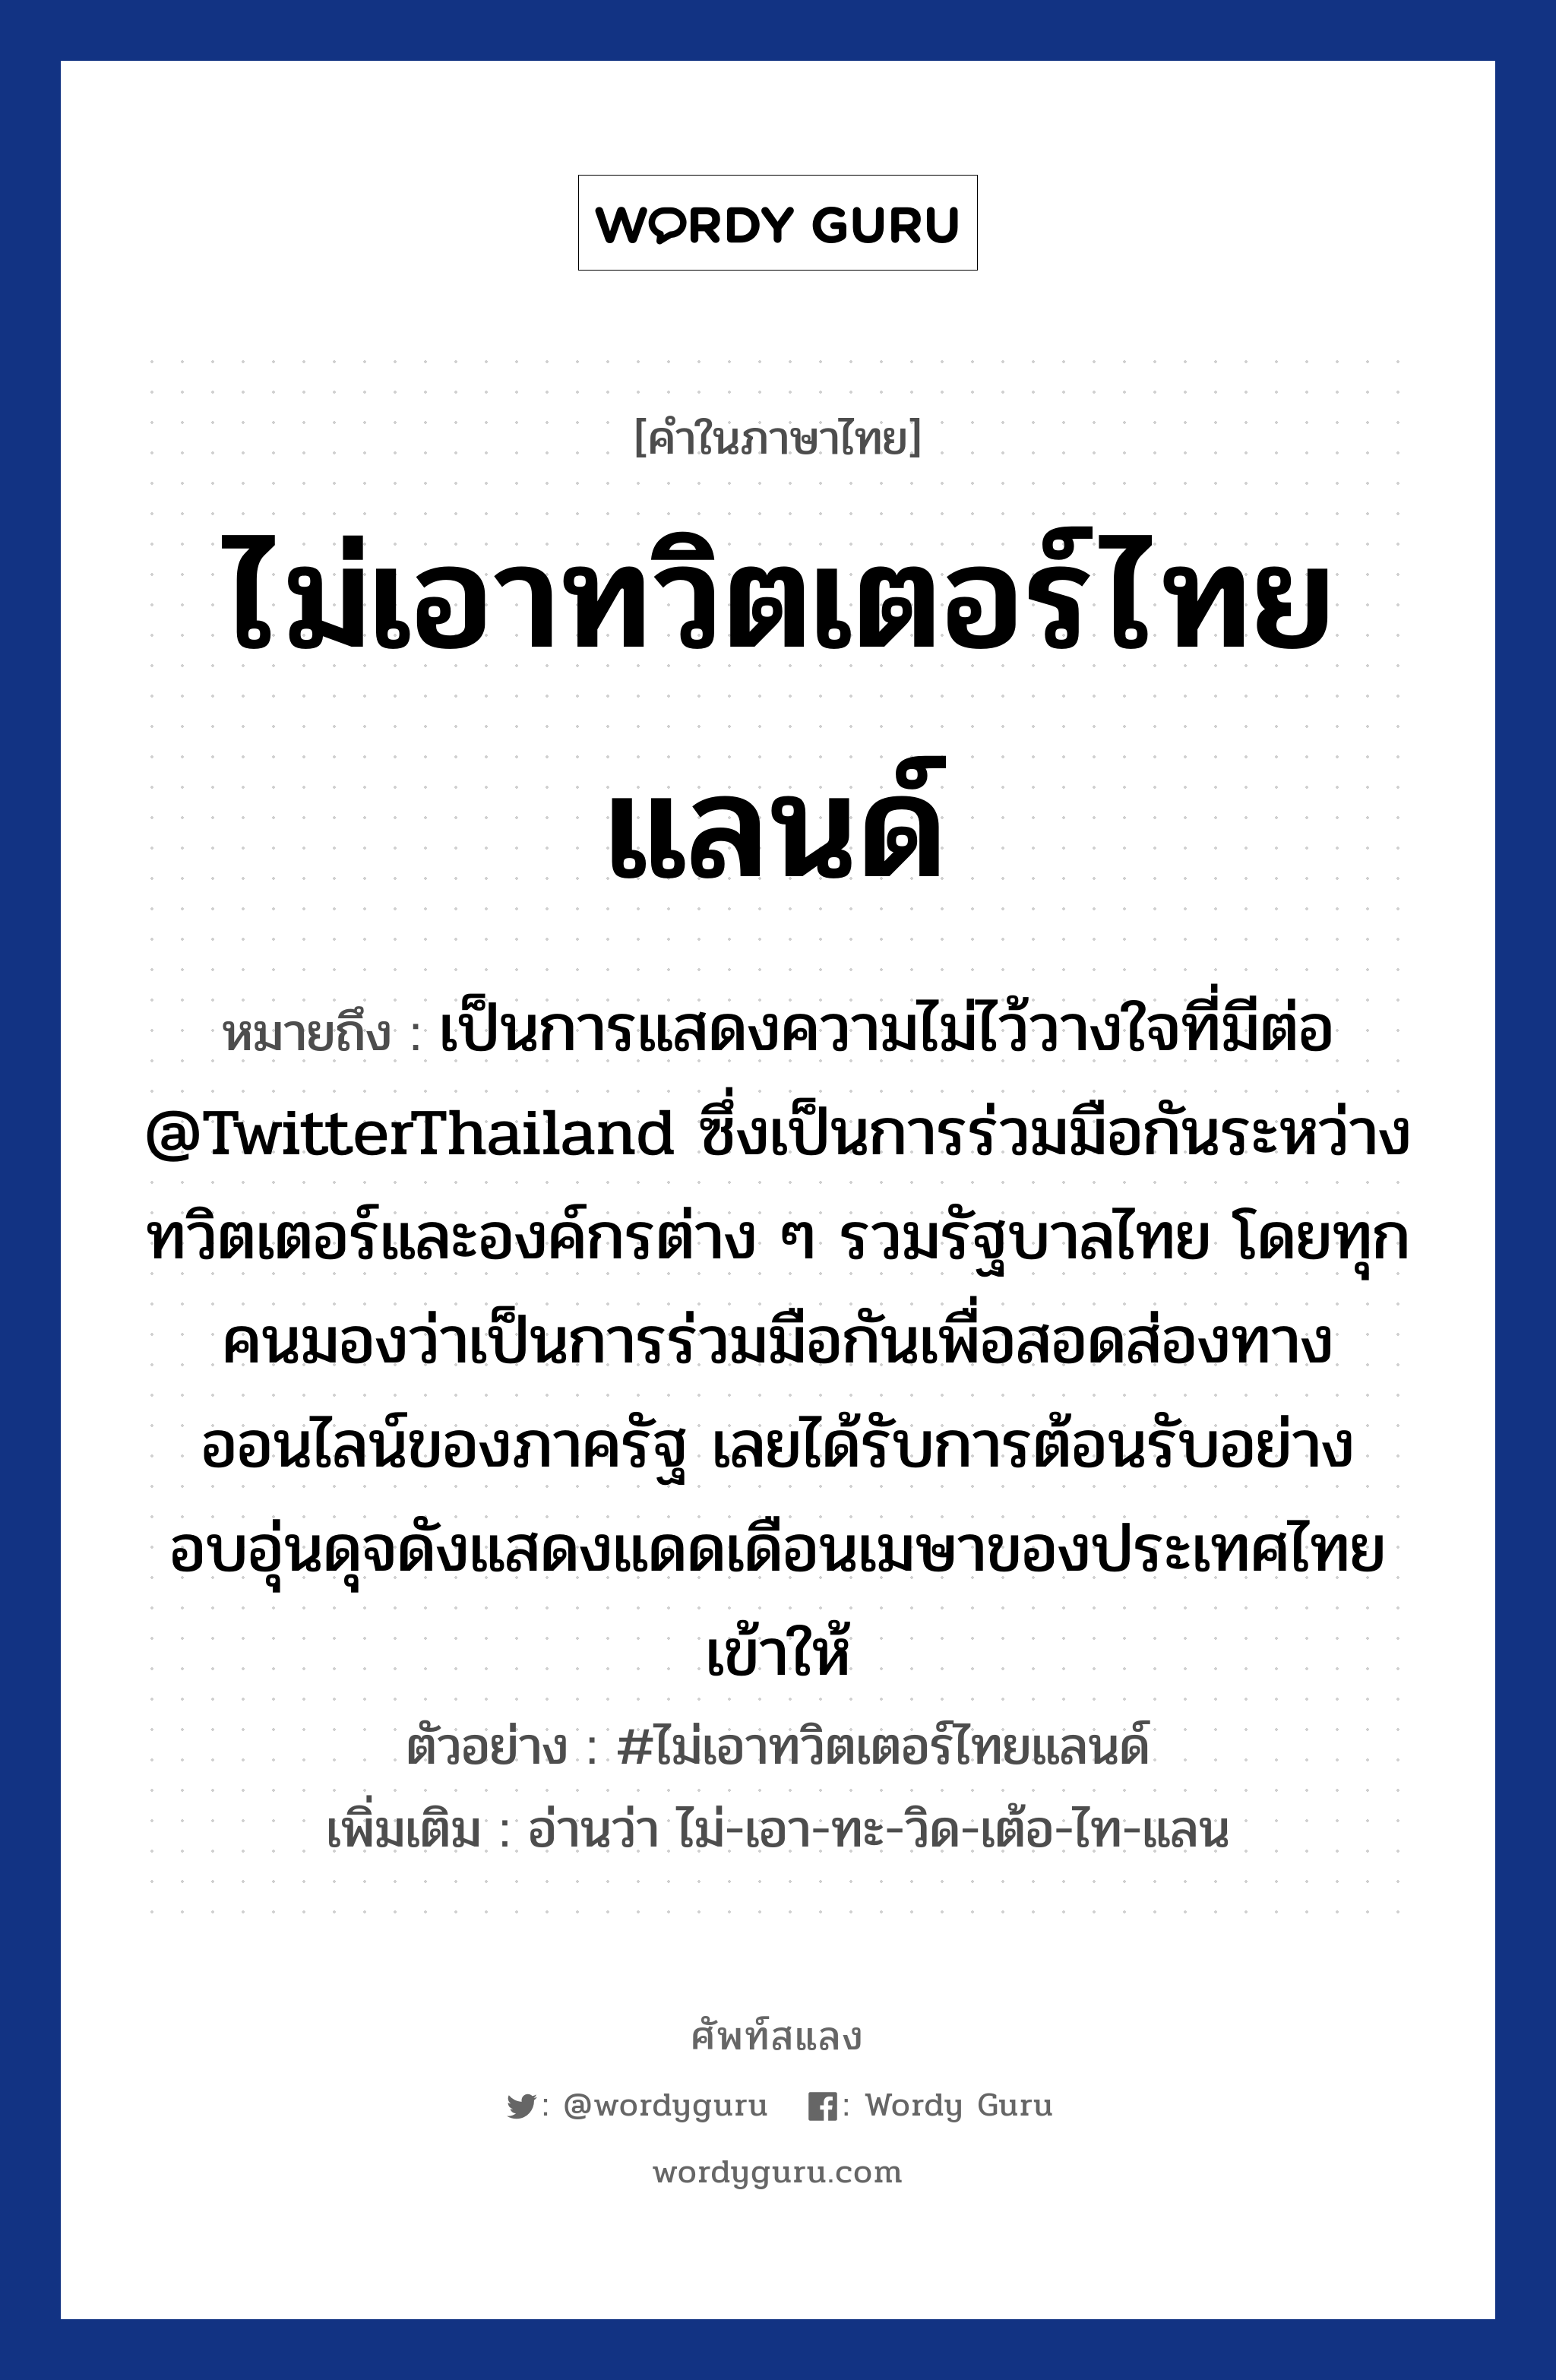 ไม่เอาทวิตเตอร์ไทยแลนด์ หมายถึงอะไร?, คำไทย ไม่เอาทวิตเตอร์ไทยแลนด์ คำในภาษาไทย ไม่เอาทวิตเตอร์ไทยแลนด์ หมายถึง เป็นการแสดงความไม่ไว้วางใจที่มีต่อ @TwitterThailand ซึ่งเป็นการร่วมมือกันระหว่างทวิตเตอร์และองค์กรต่าง ๆ รวมรัฐบาลไทย โดยทุกคนมองว่าเป็นการร่วมมือกันเพื่อสอดส่องทางออนไลน์ของภาครัฐ เลยได้รับการต้อนรับอย่างอบอุ่นดุจดังแสดงแดดเดือนเมษาของประเทศไทยเข้าให้ ตัวอย่าง #ไม่เอาทวิตเตอร์ไทยแลนด์ เพิ่มเติม อ่านว่า ไม่-เอา-ทะ-วิด-เต้อ-ไท-แลน